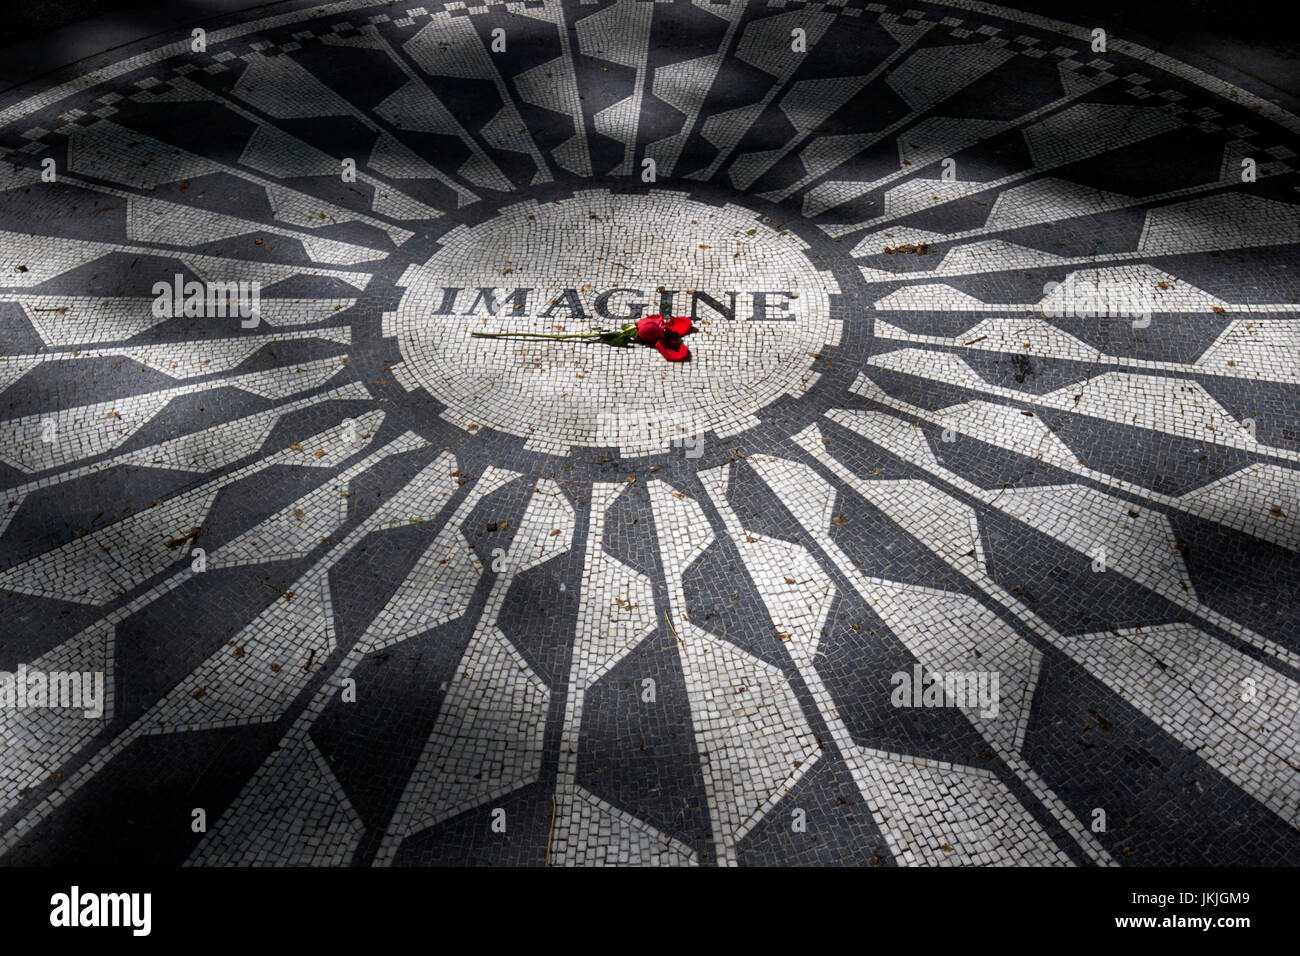 Rose rouge sur la mosaïque imaginer dédié à John Lennon dans Central Park New York USA Banque D'Images